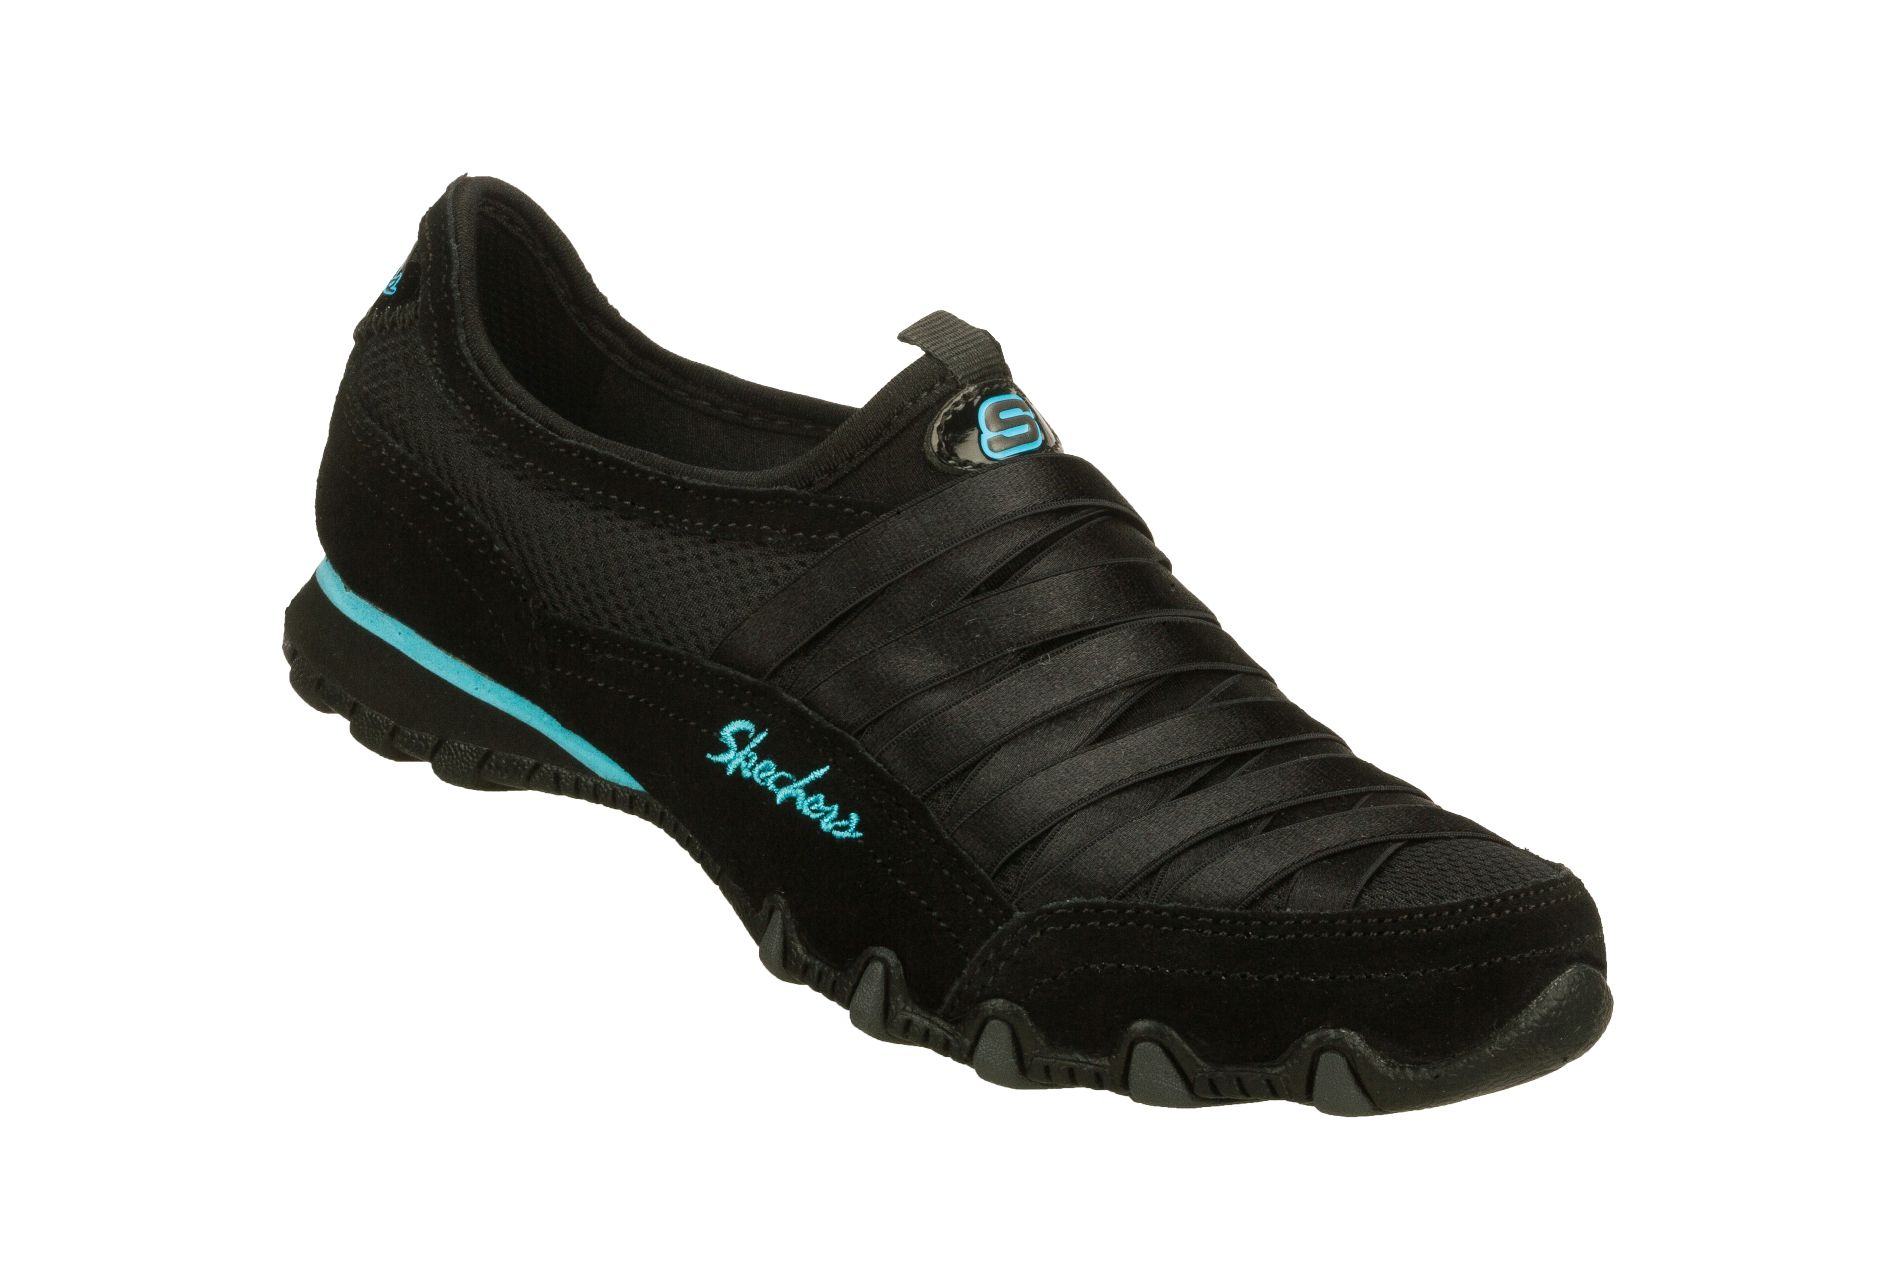 Skechers Women's Athletic Shoe Fixation Wide Width - Black